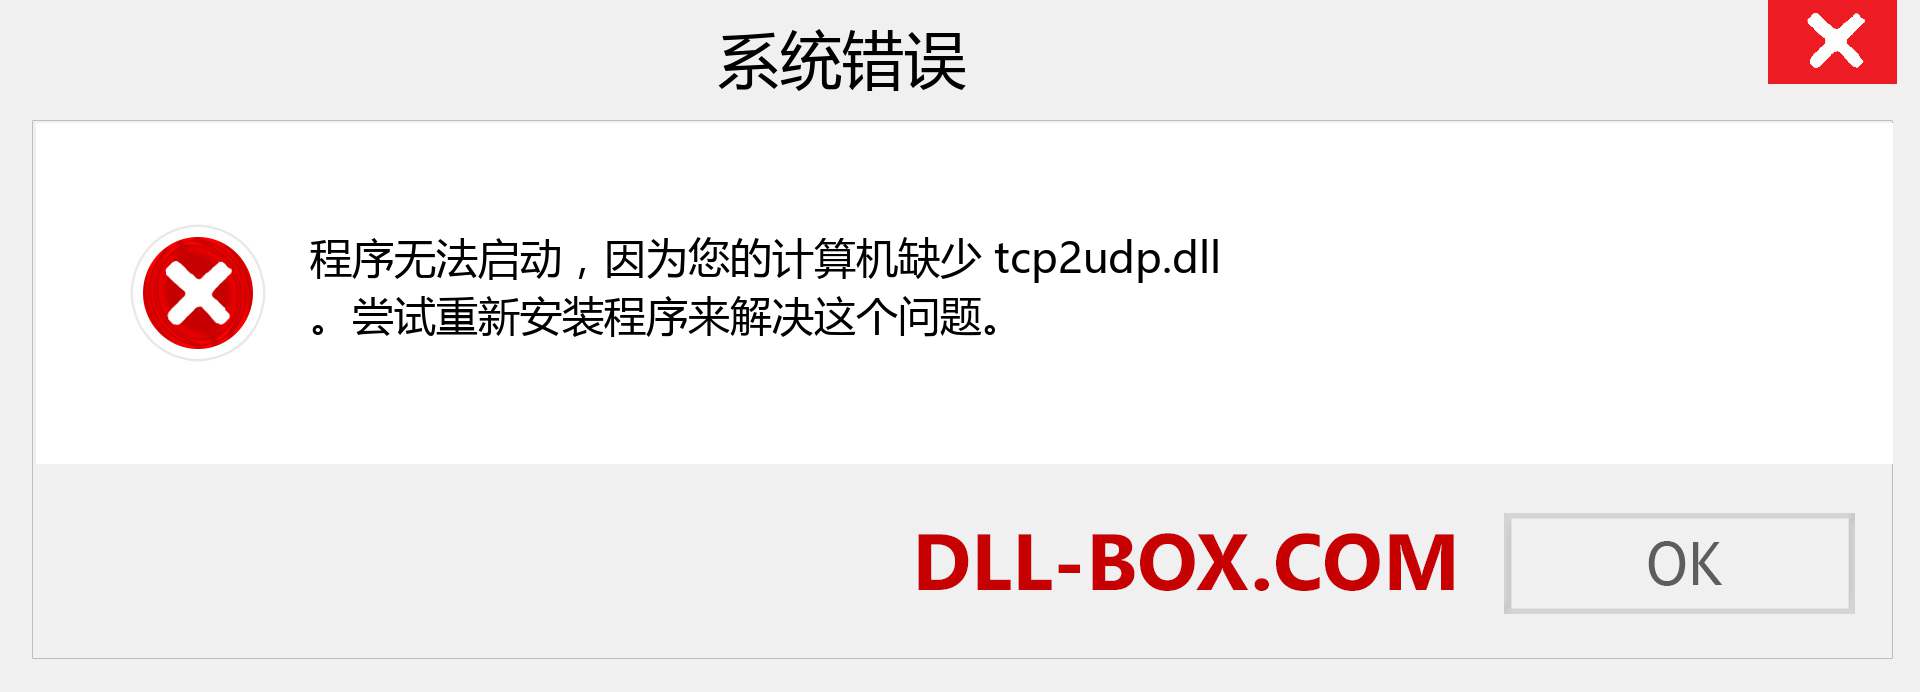 tcp2udp.dll 文件丢失？。 适用于 Windows 7、8、10 的下载 - 修复 Windows、照片、图像上的 tcp2udp dll 丢失错误